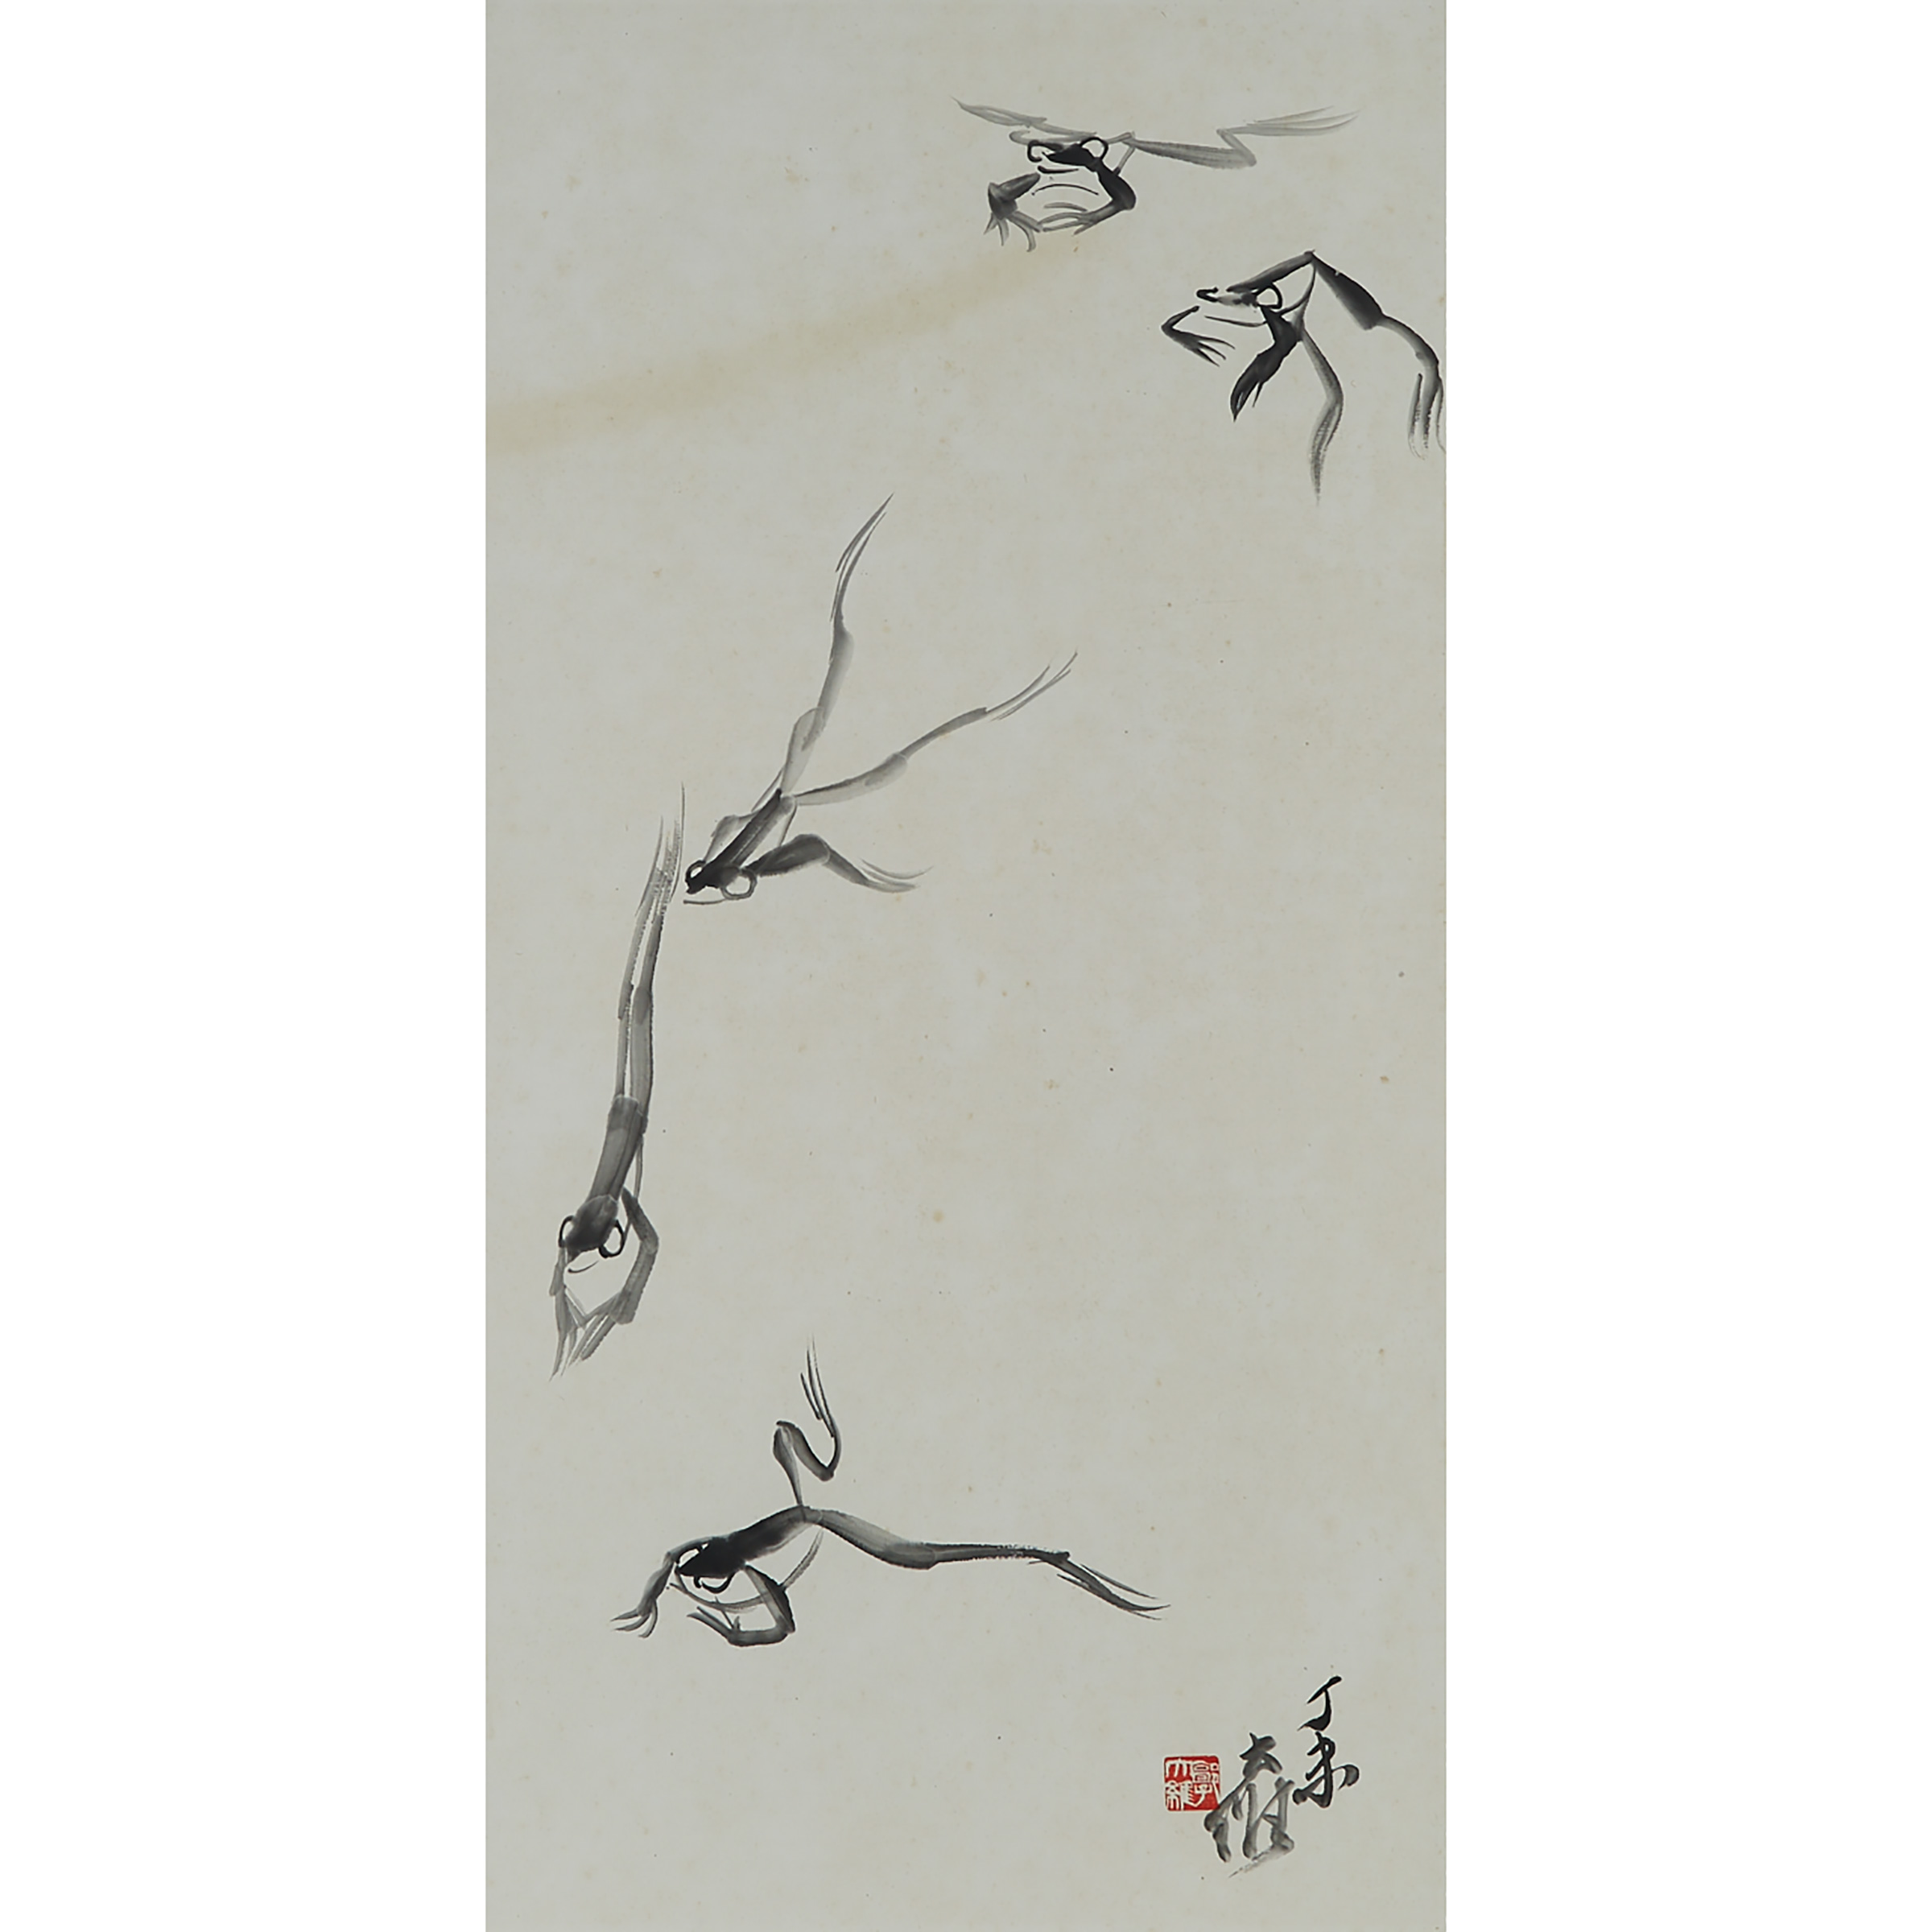 Guo Da Wei (1919-2003), Frogs